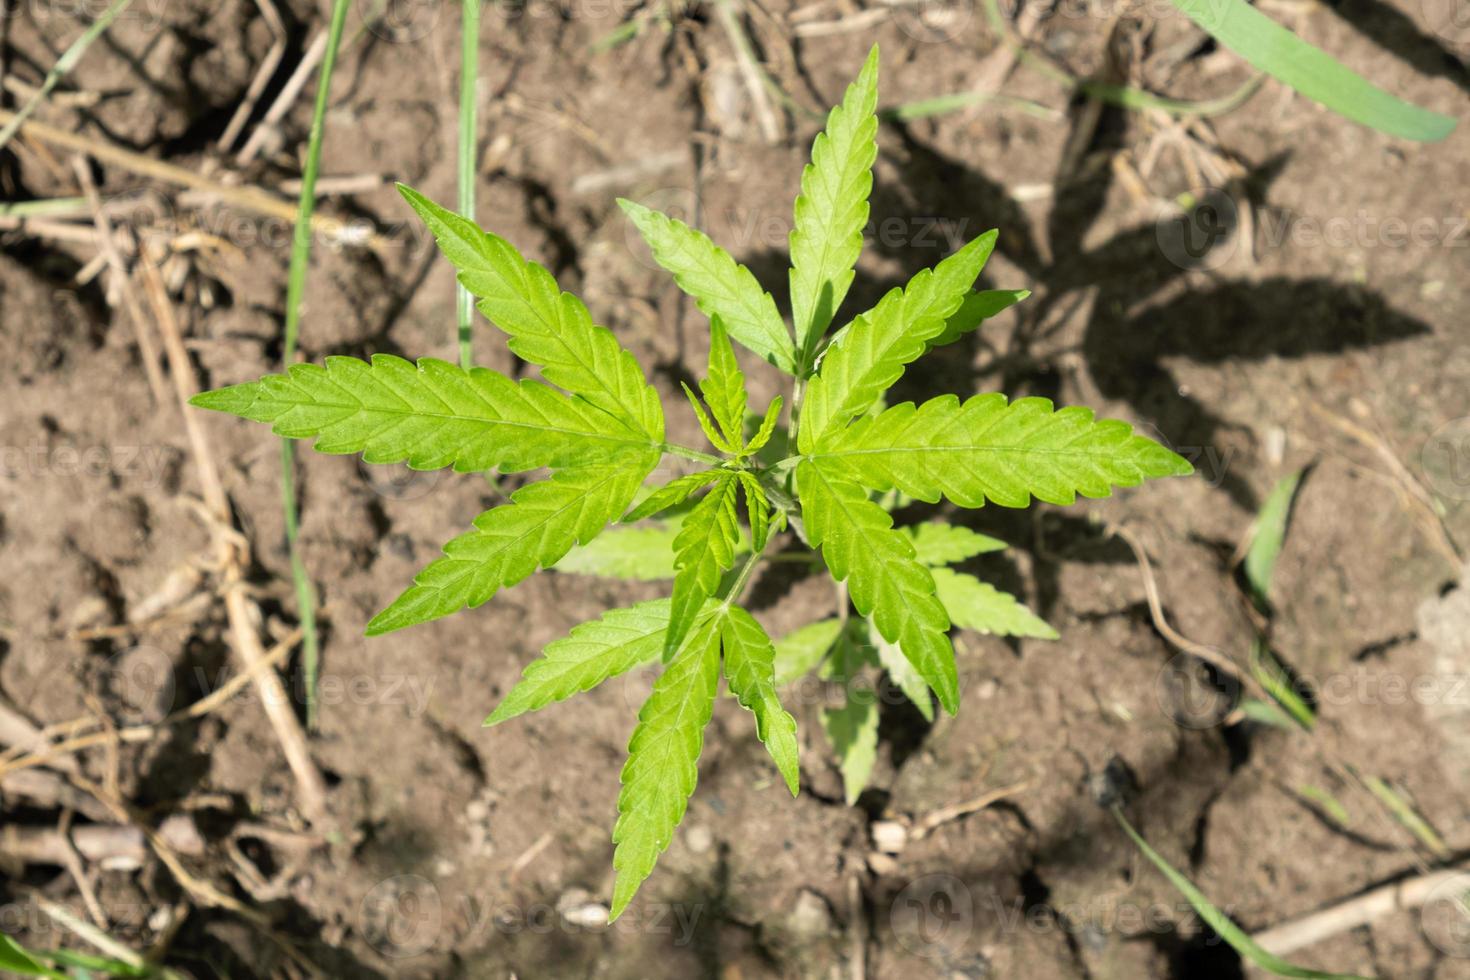 jovem broto verde de maconha em uma planta de cannabis ao ar livre foto